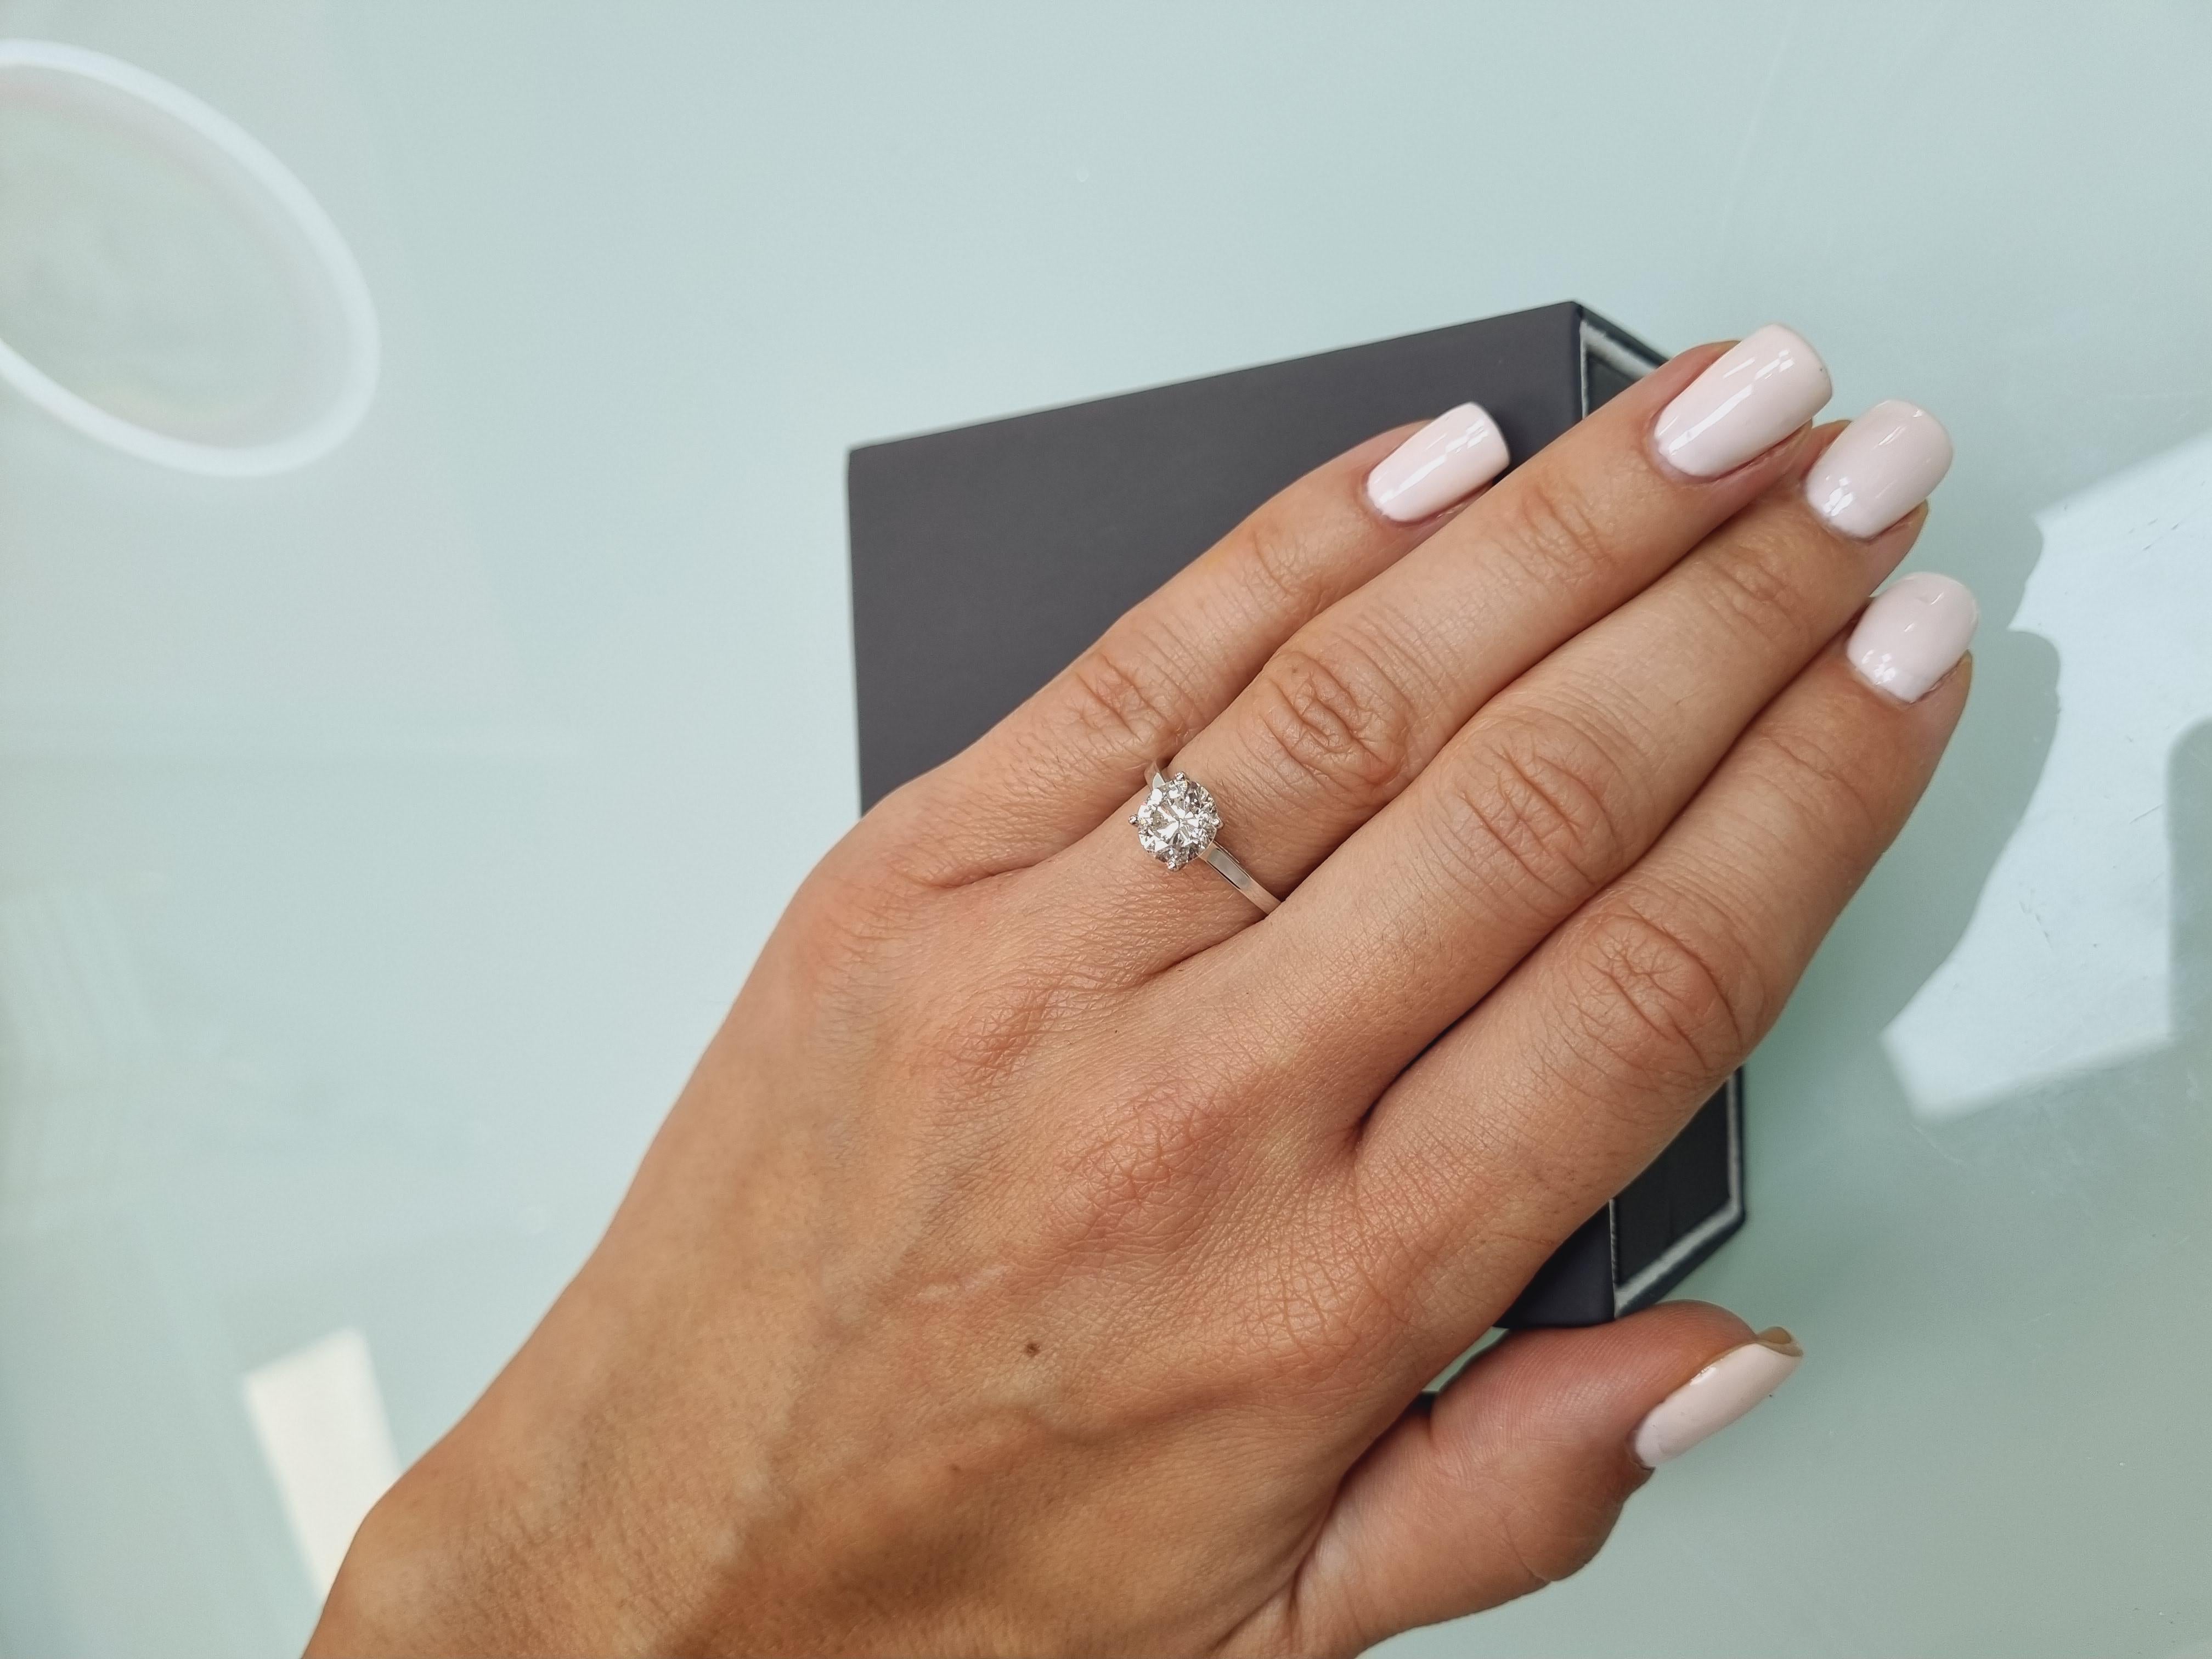 Brilliant Cut Solitare Diamond Ring 18k White Gold  1.75ct For Sale